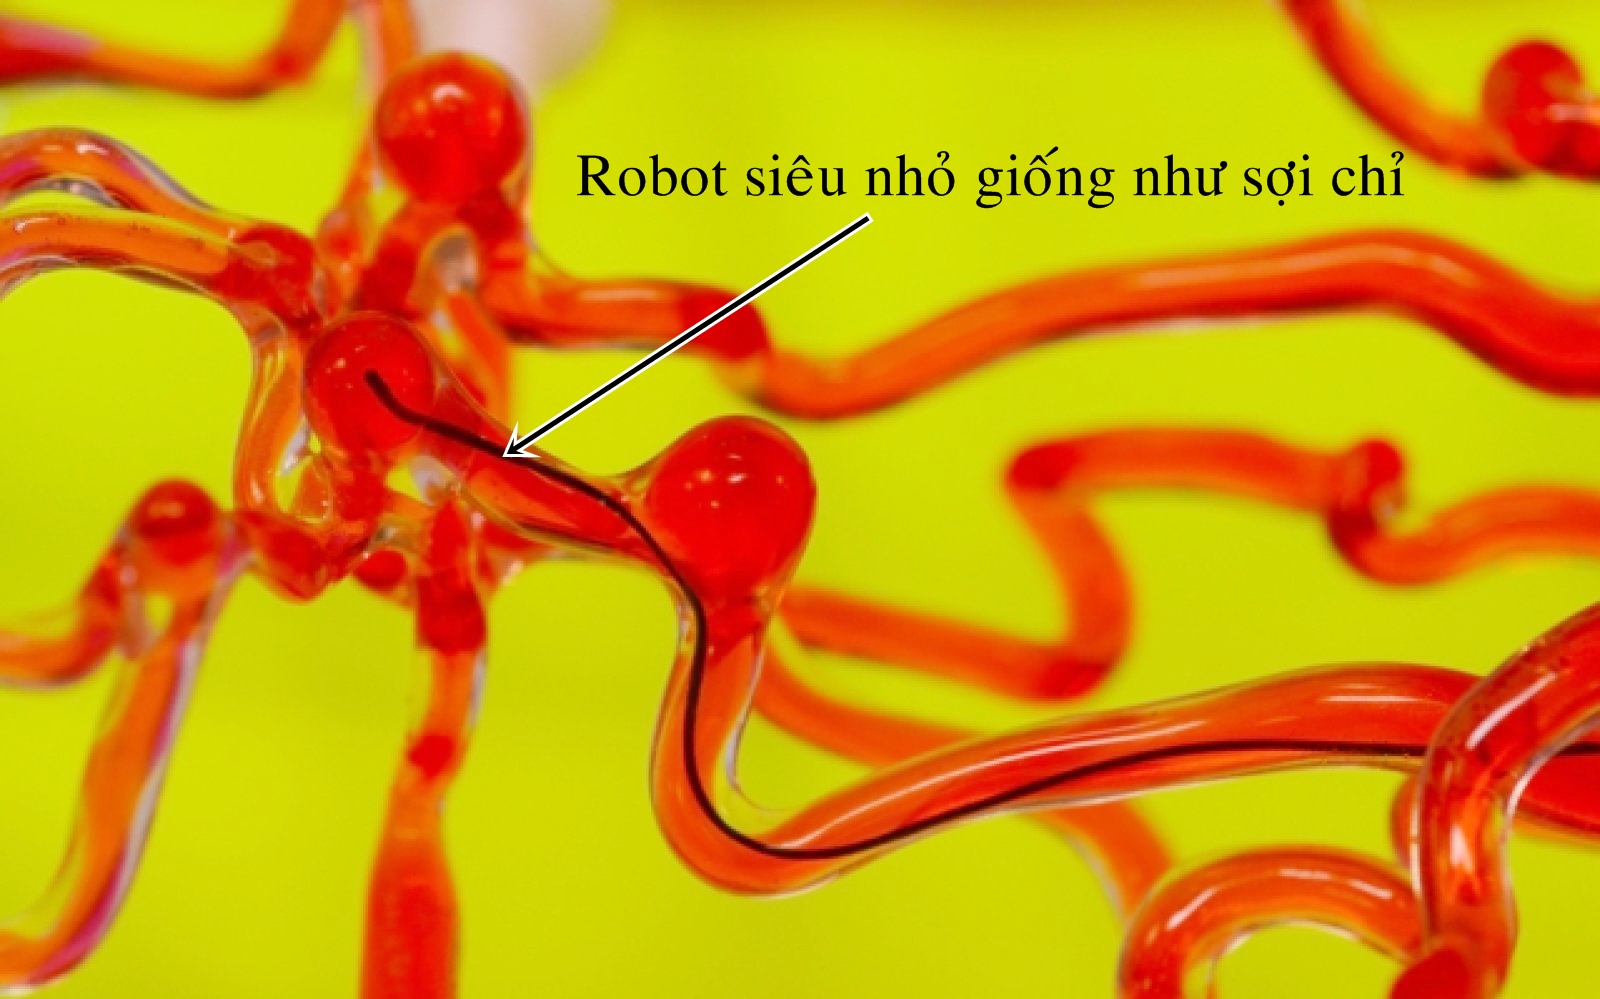 Robot di chuyển trong mô hình mạch máu não. Ảnh: MIT.